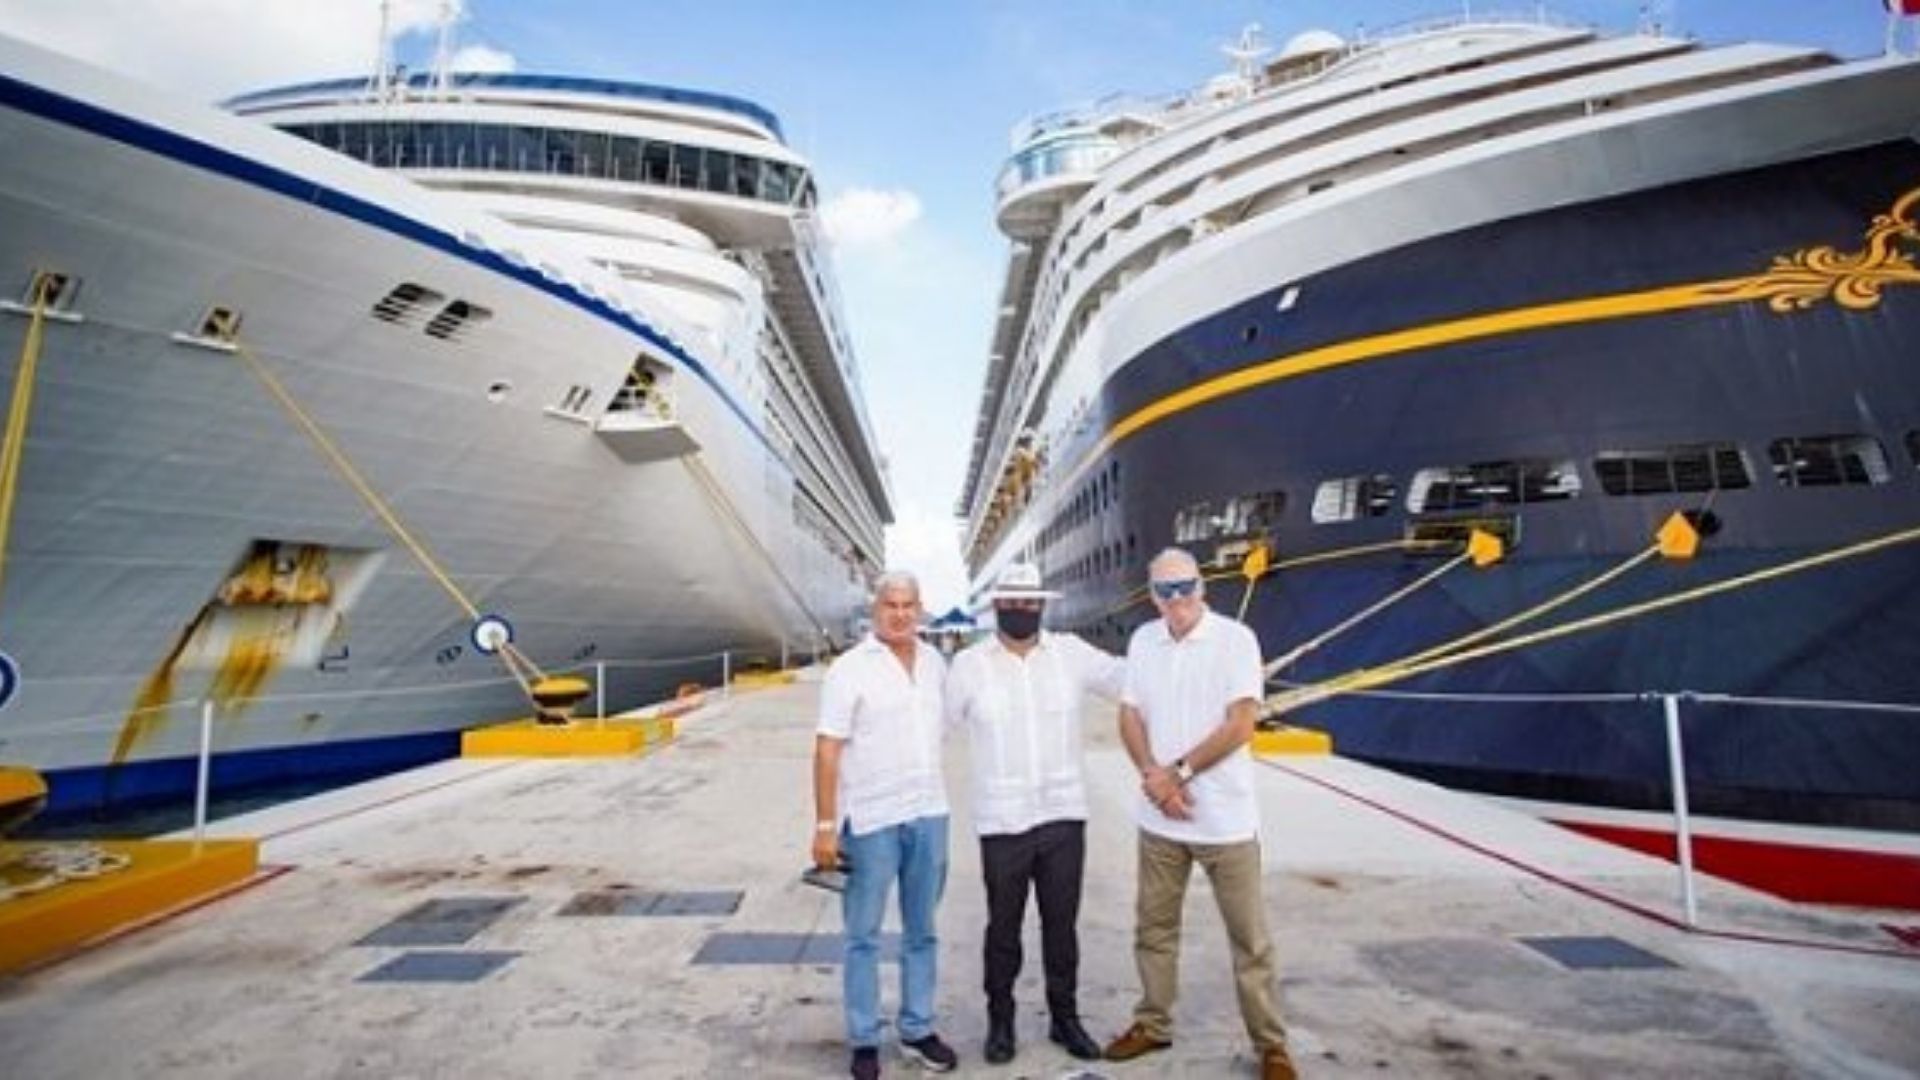 Se trata del crucero 'La Perla del Caribe' de Atlantic International Cruises, que a partir de octubre del 2022 conectará turísticamente a ambos puertos